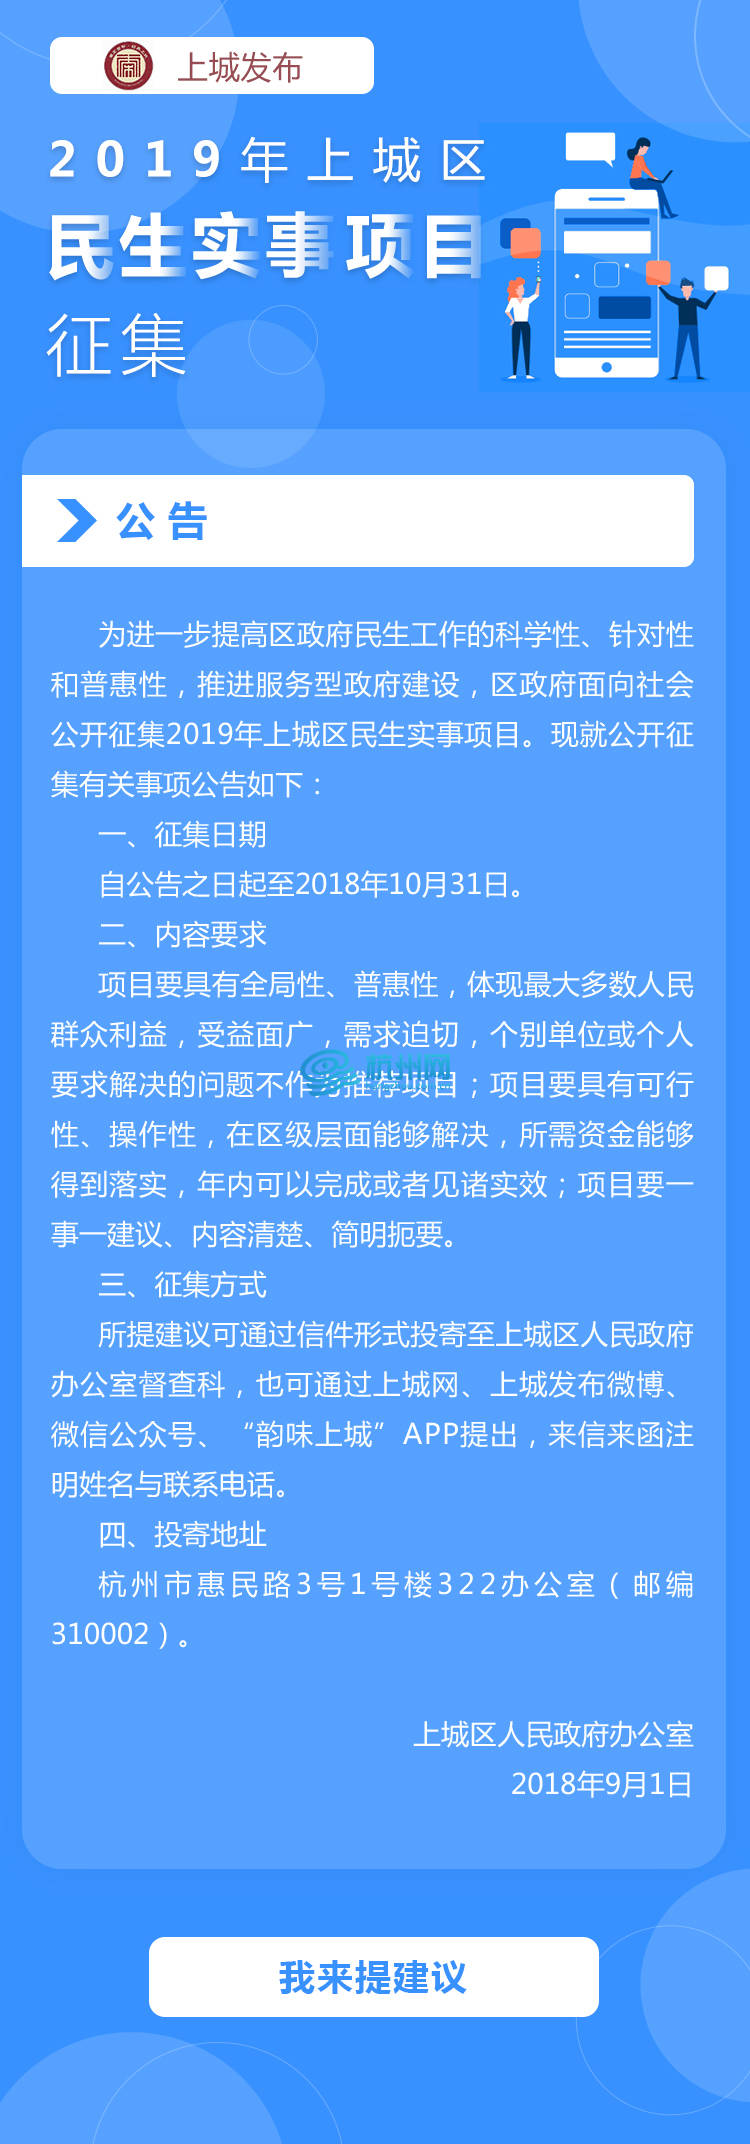 上城发布-2019年民生实事征集 手机端页面(01)